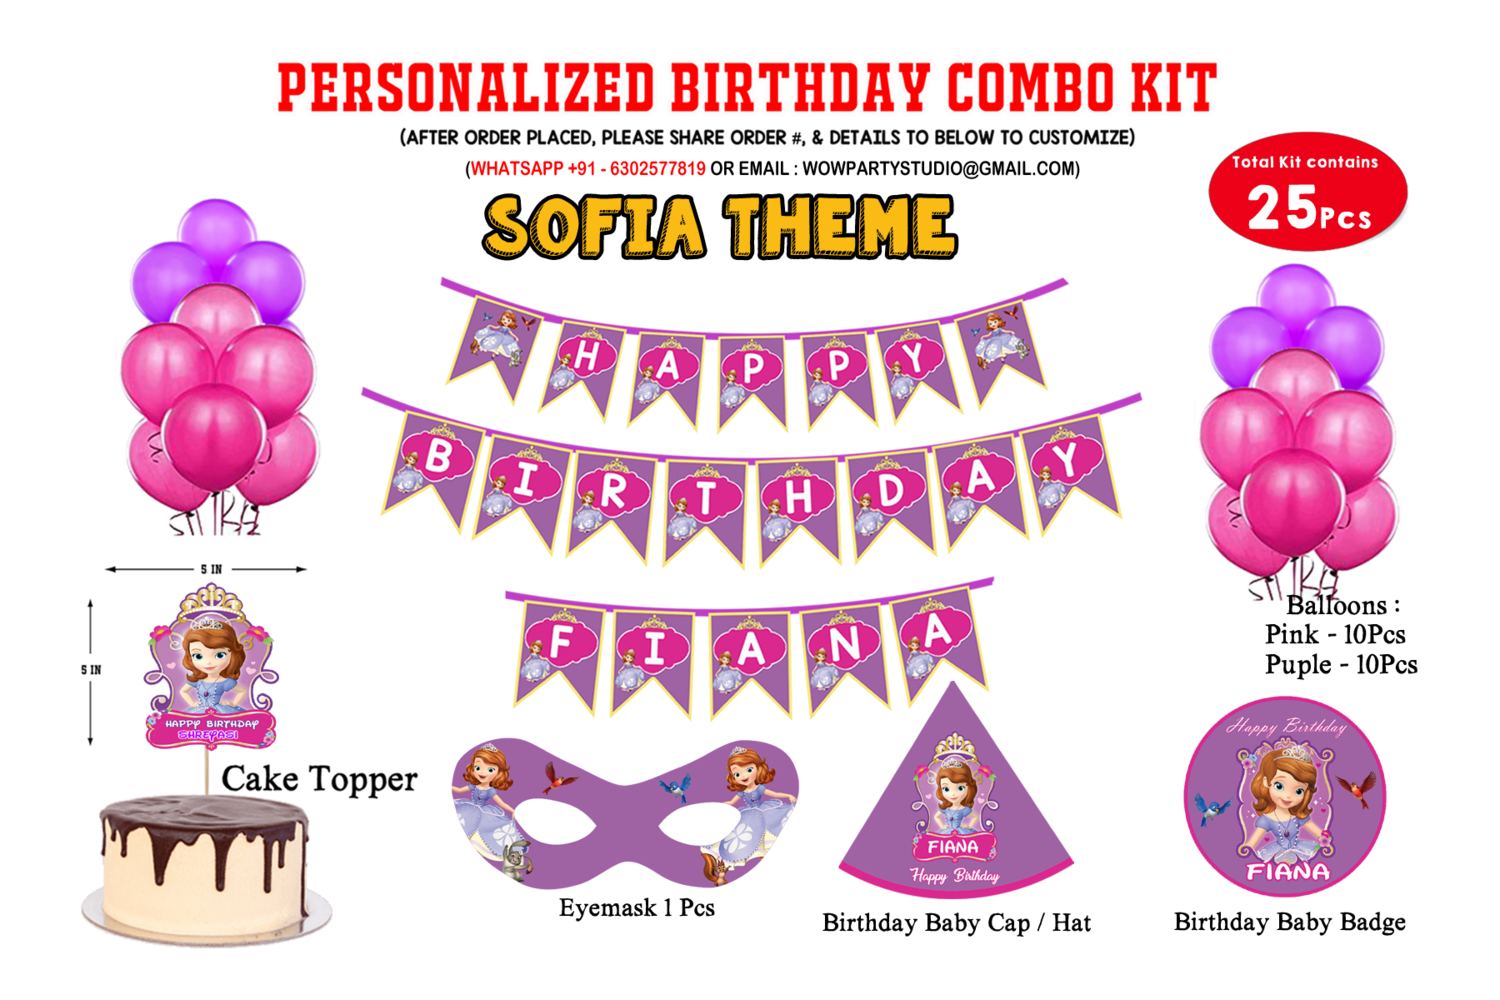 Sofia Theme - Combo Kit 25Pcs